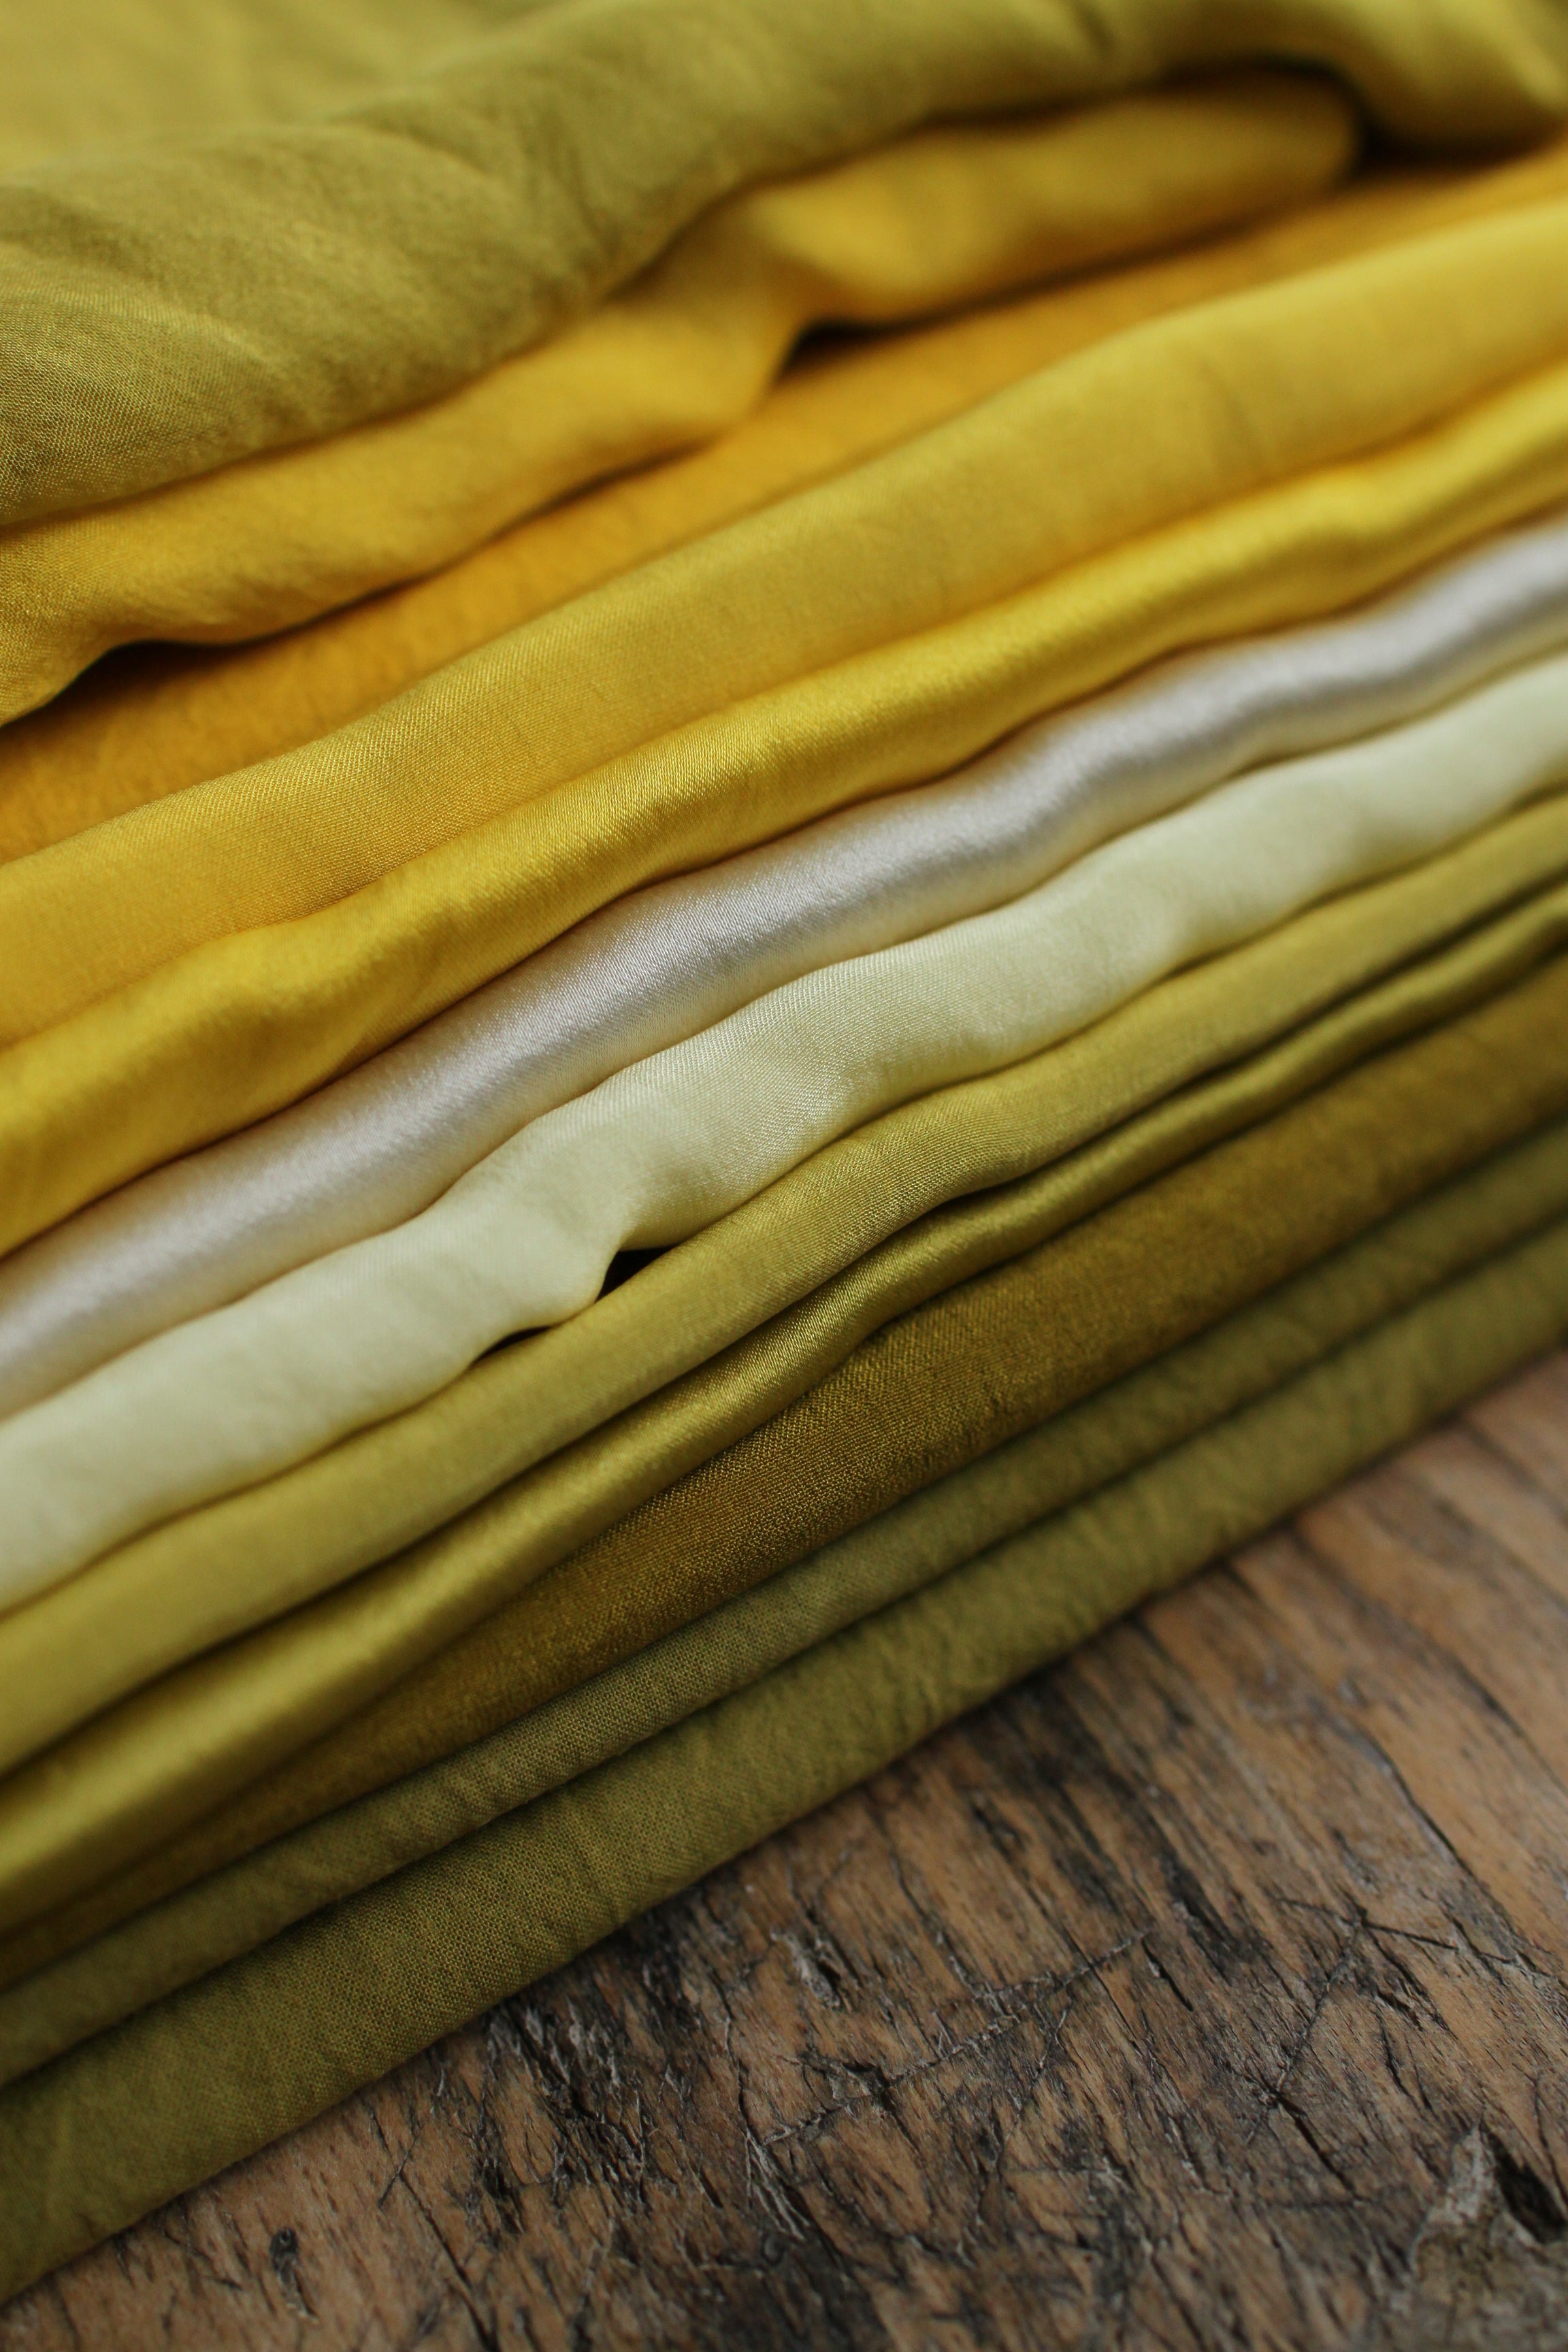 Ruban en popeline de coton - couleur "tournesol" - largeur 5cm, longueur 2,5m